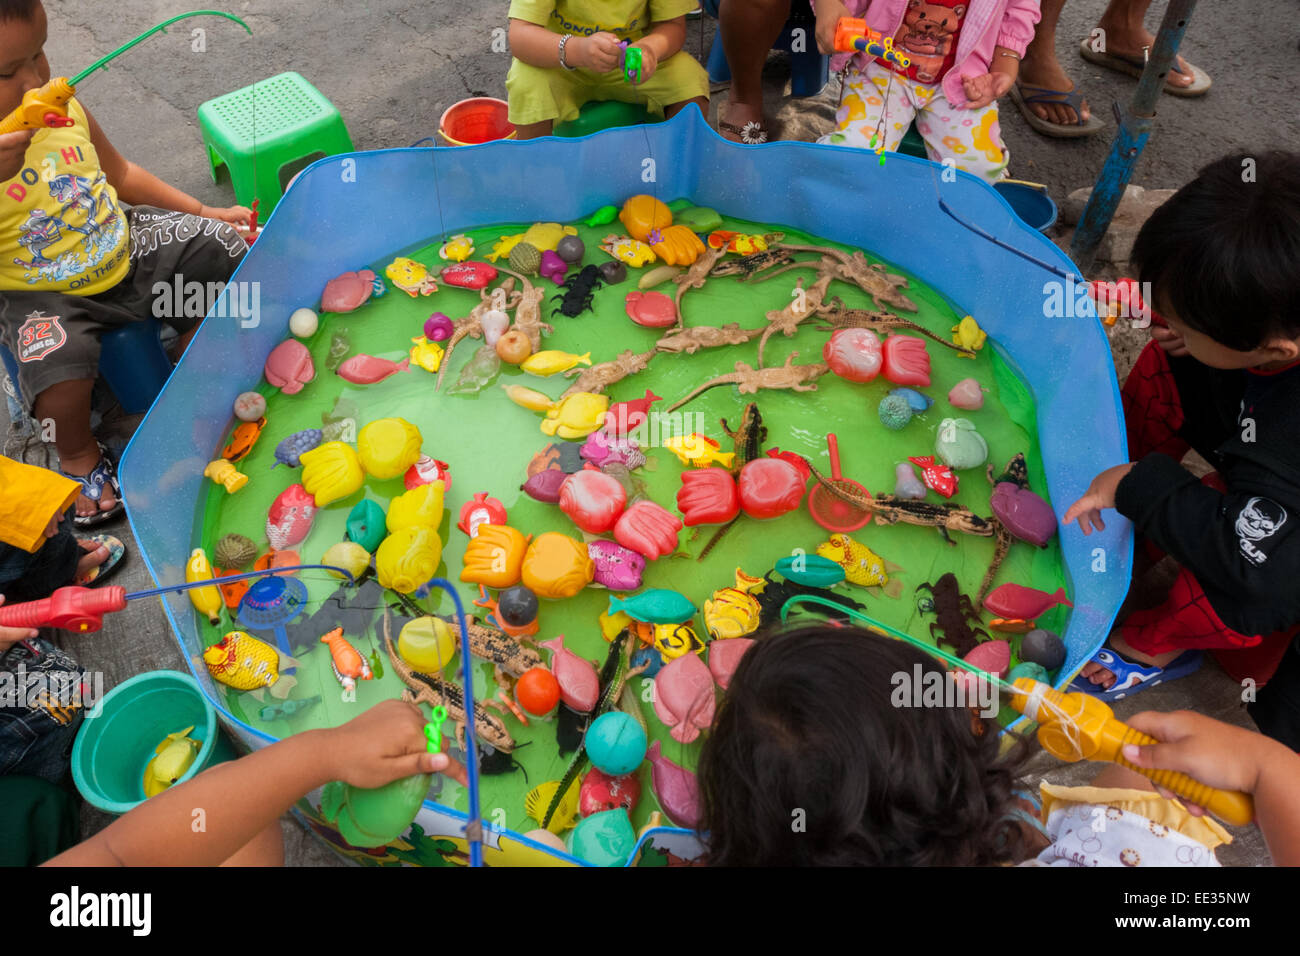 Auf einem Straßenmarkt in der Nähe des Heroes Monument in Surabaya, Ost-Java, Indonesien, spielen Kinder auf einem kleinen Teich mit Plastikspielzeug Angelspiele. Stockfoto